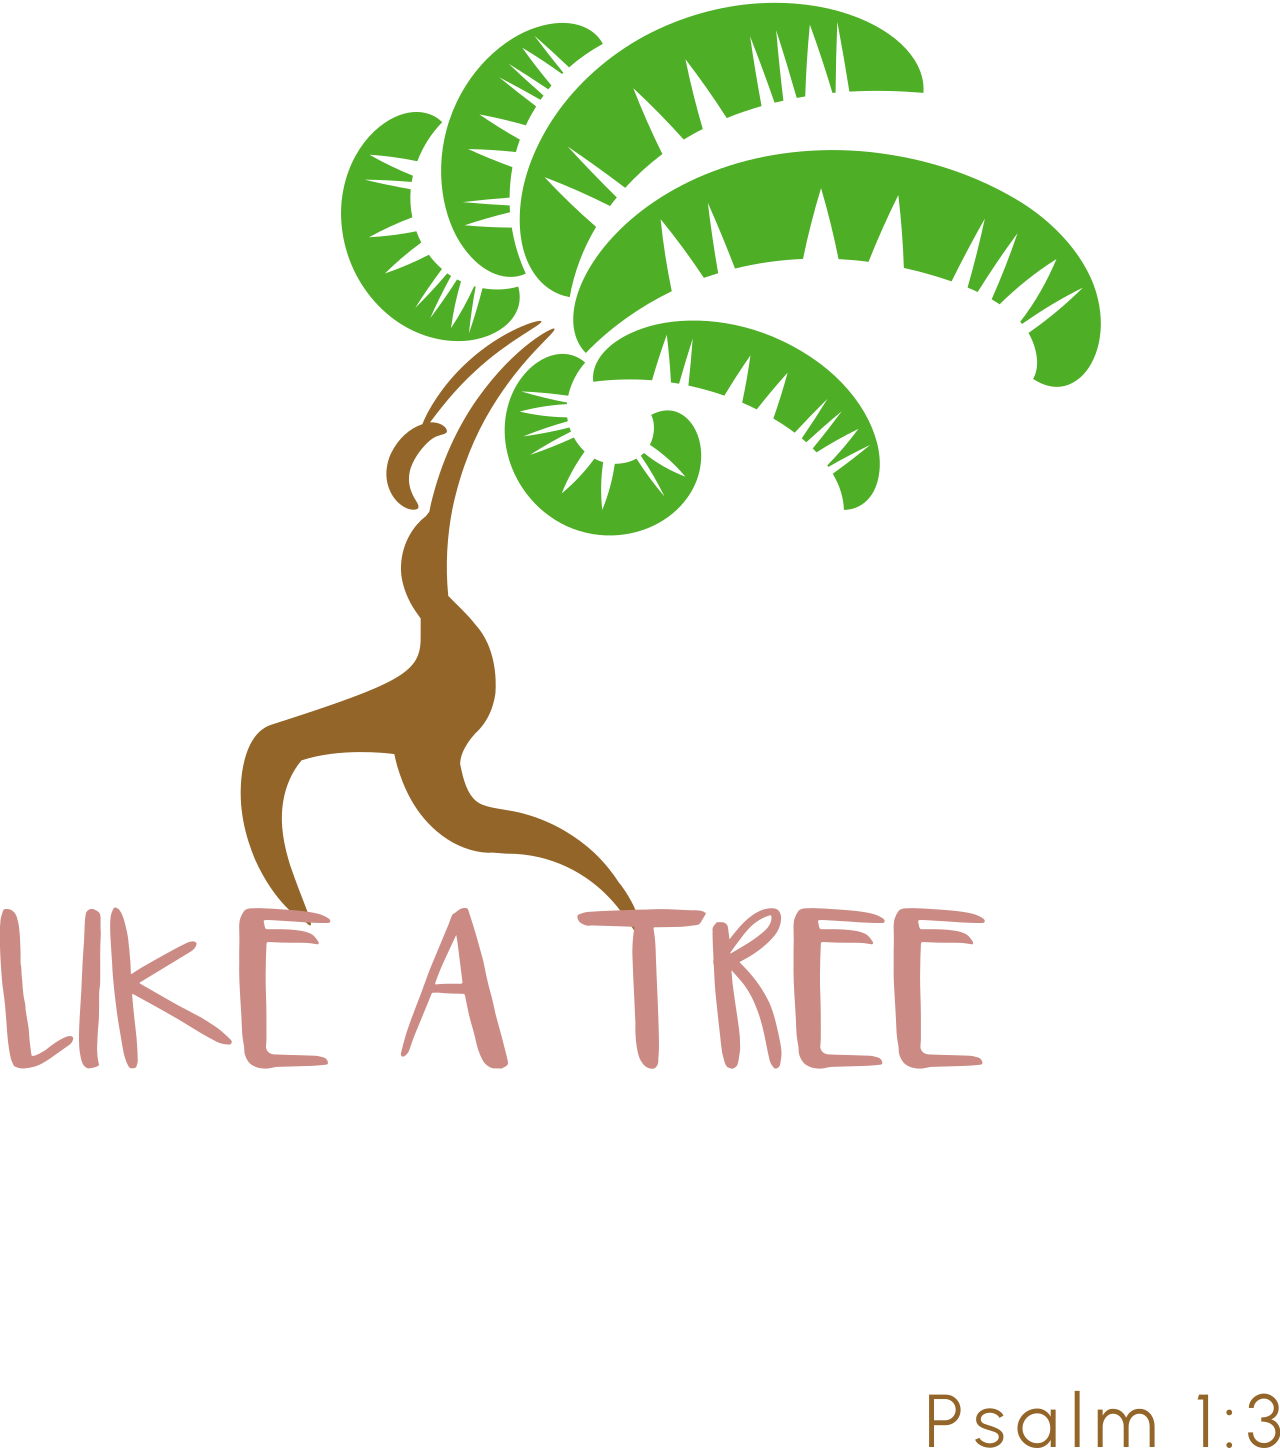 Like A Tree's logo